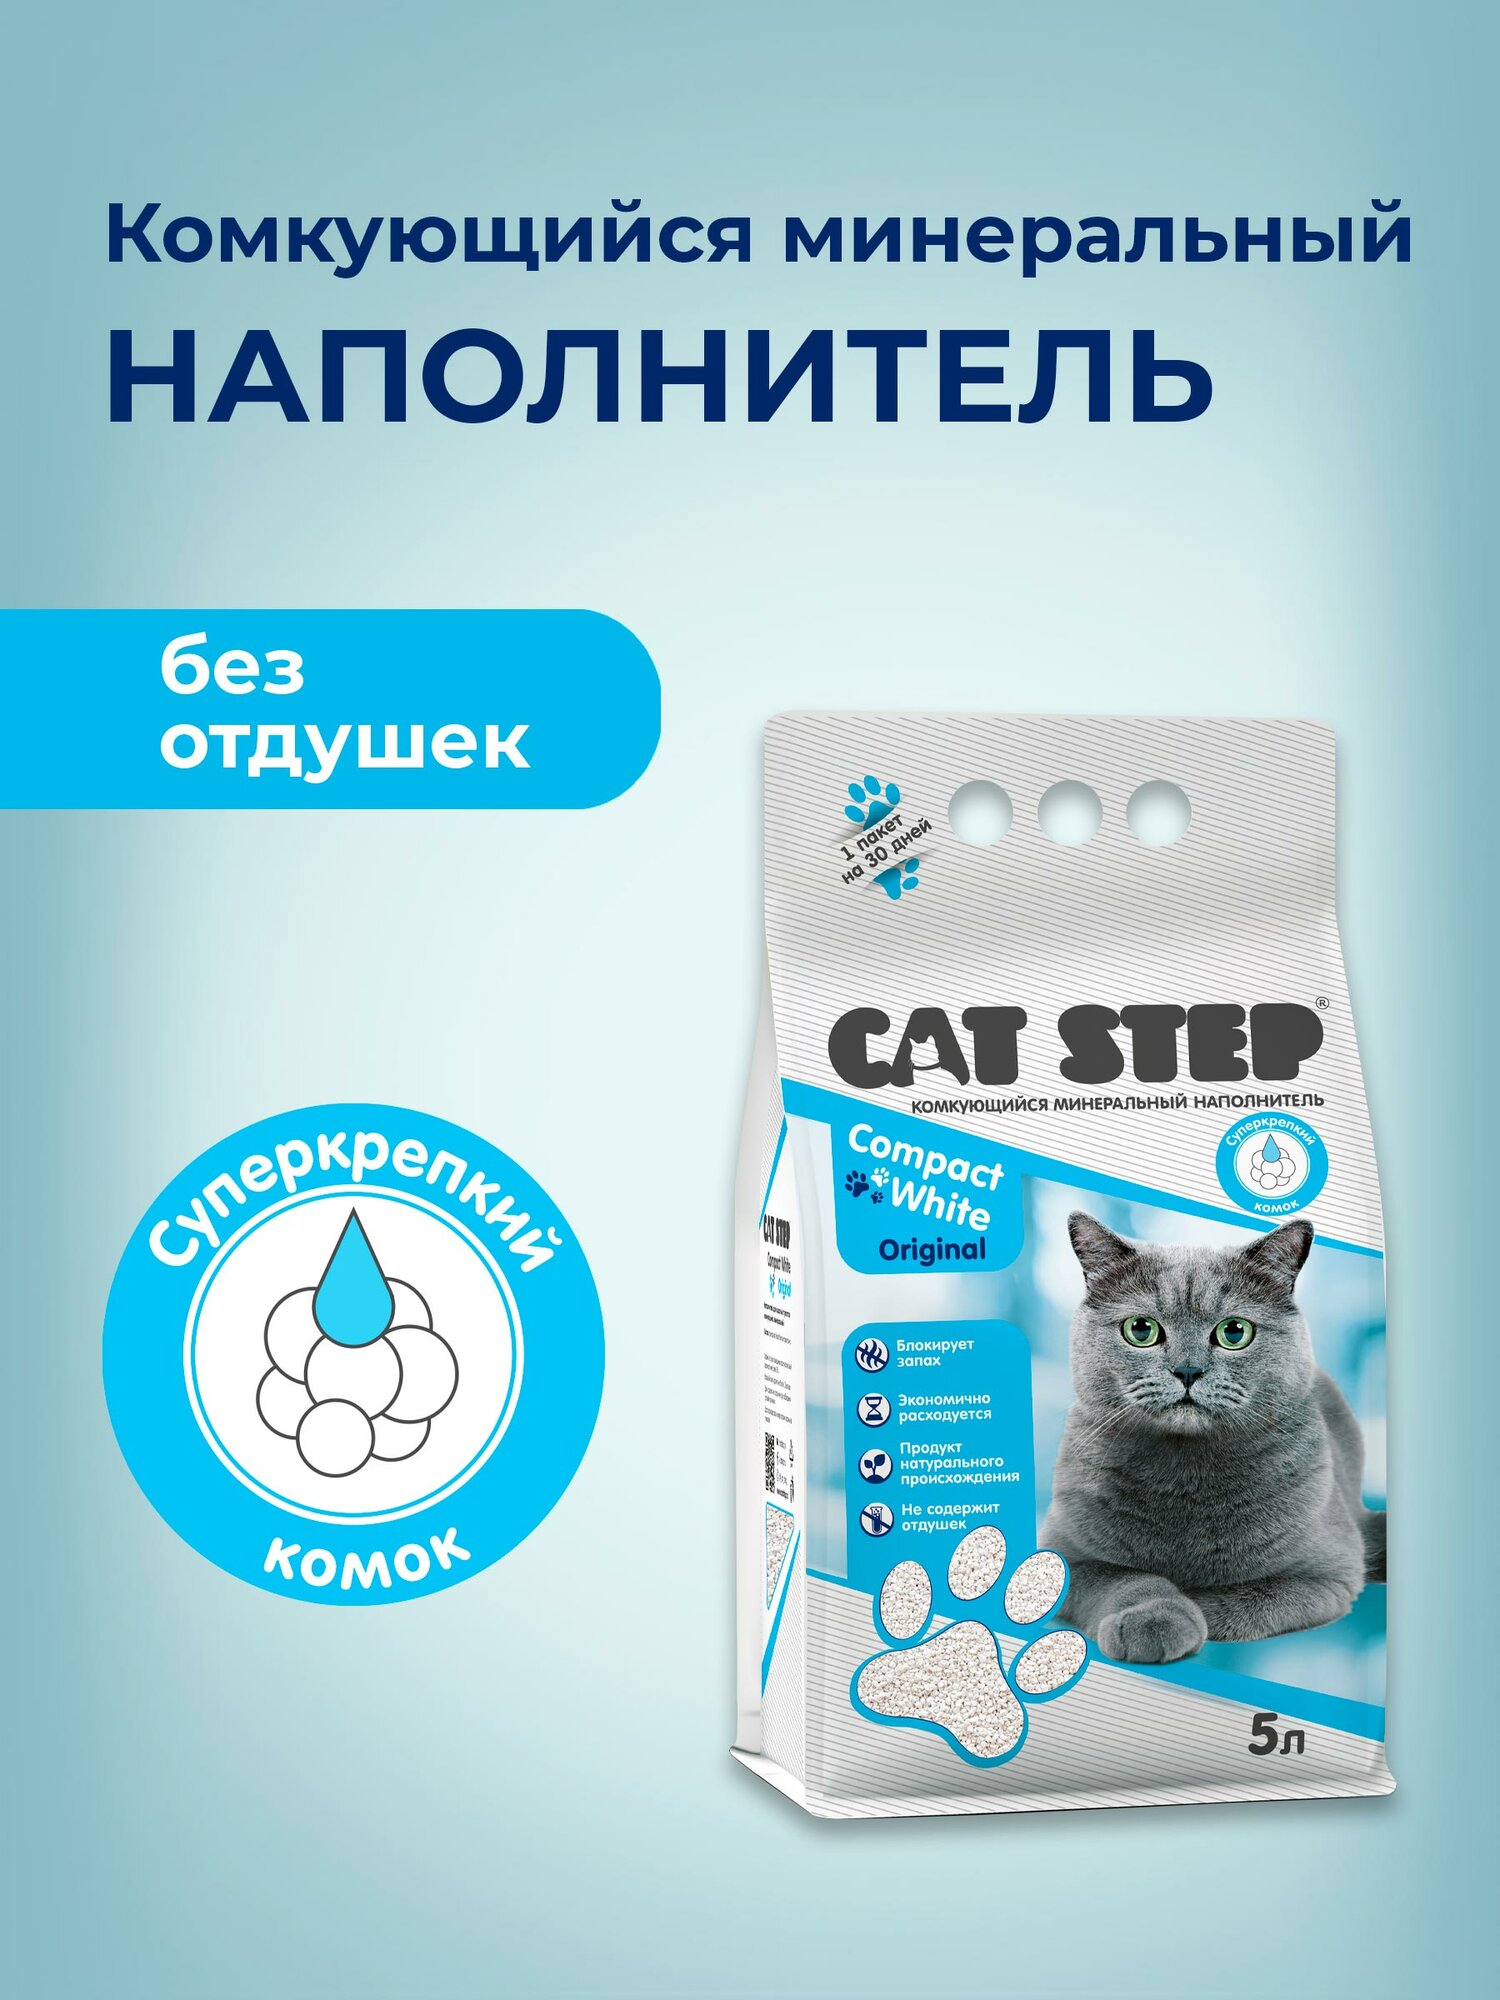 Наполнитель комкующийся минеральный CAT STEP Compact White Original, 5 л